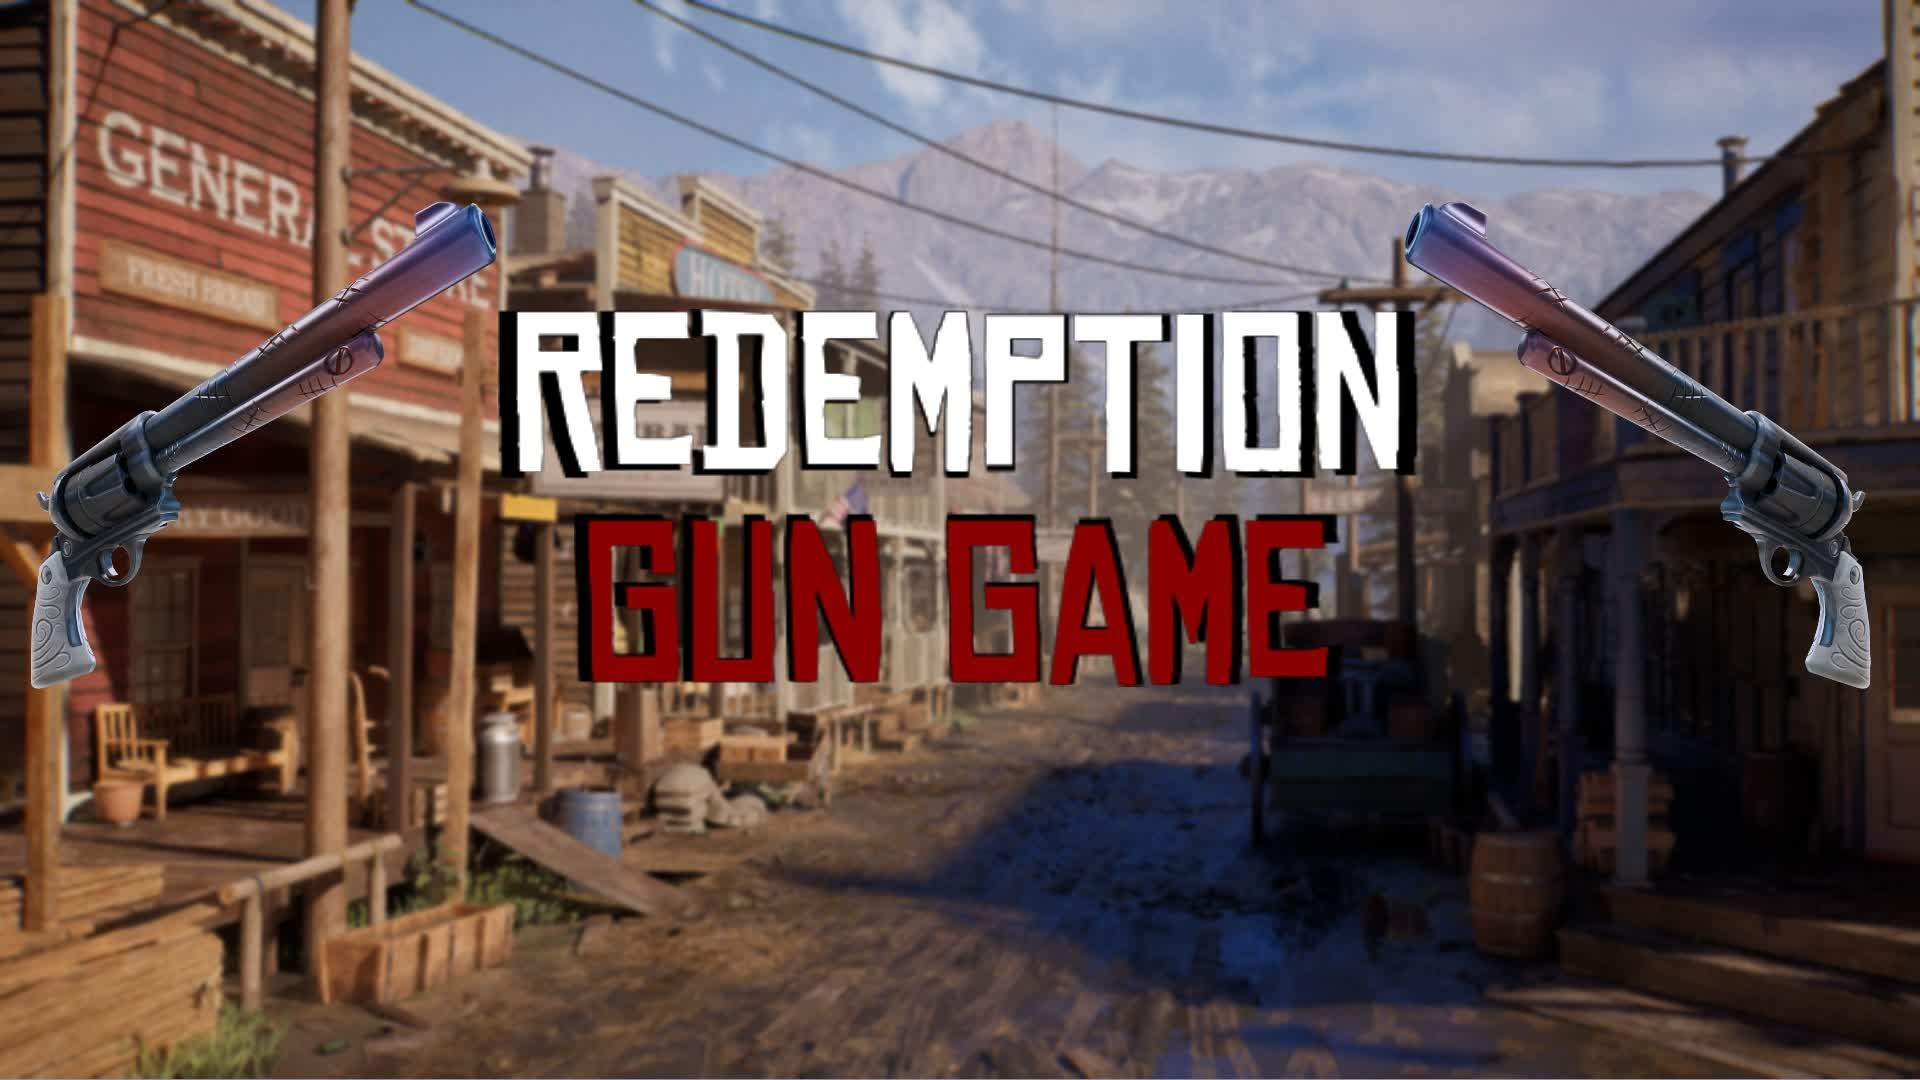 Gun Game - Redemption